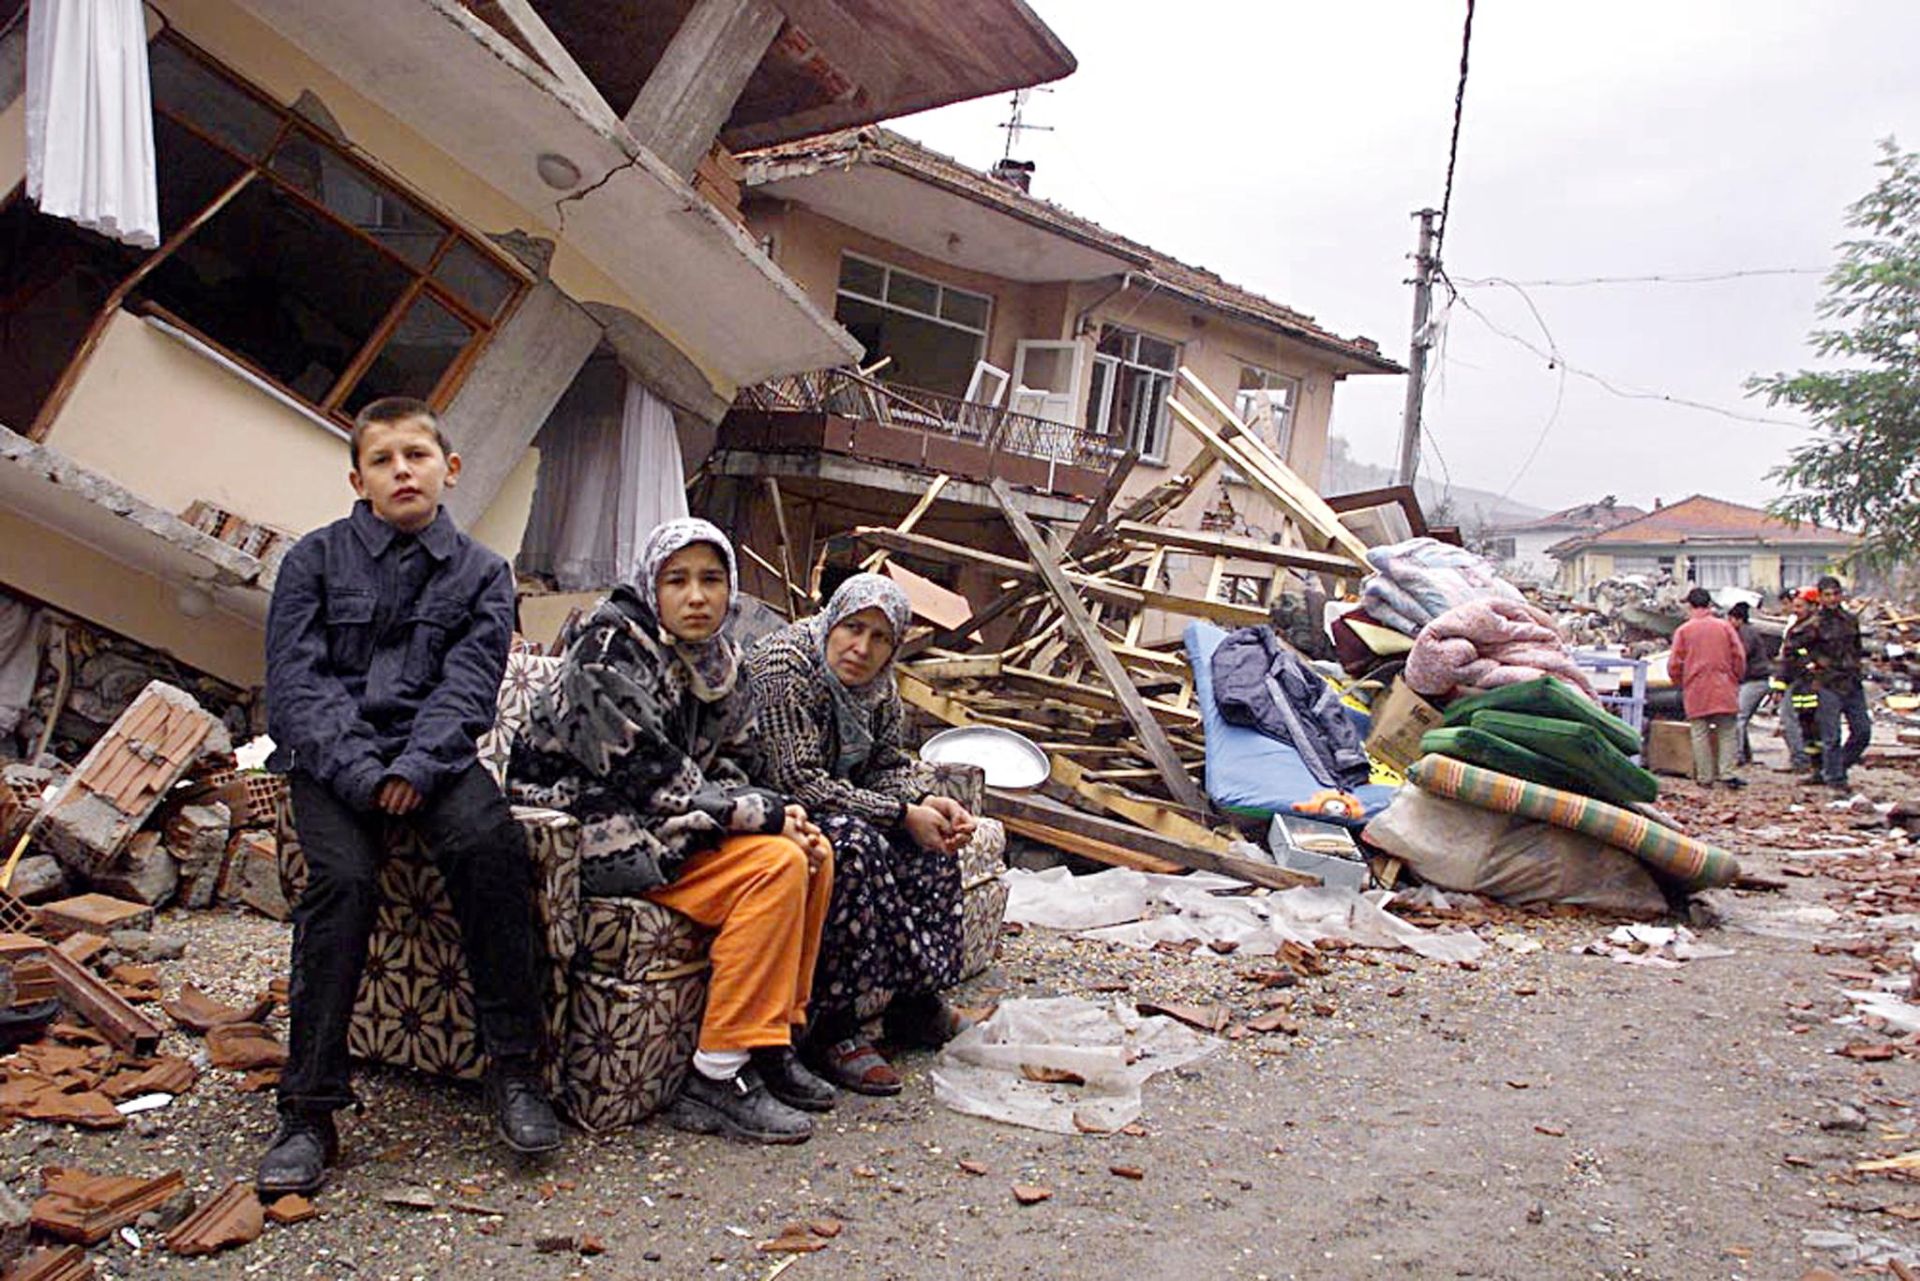 Turkey’s Cataclysmic 1999 Earthquake Foretold a Future Catastrophe